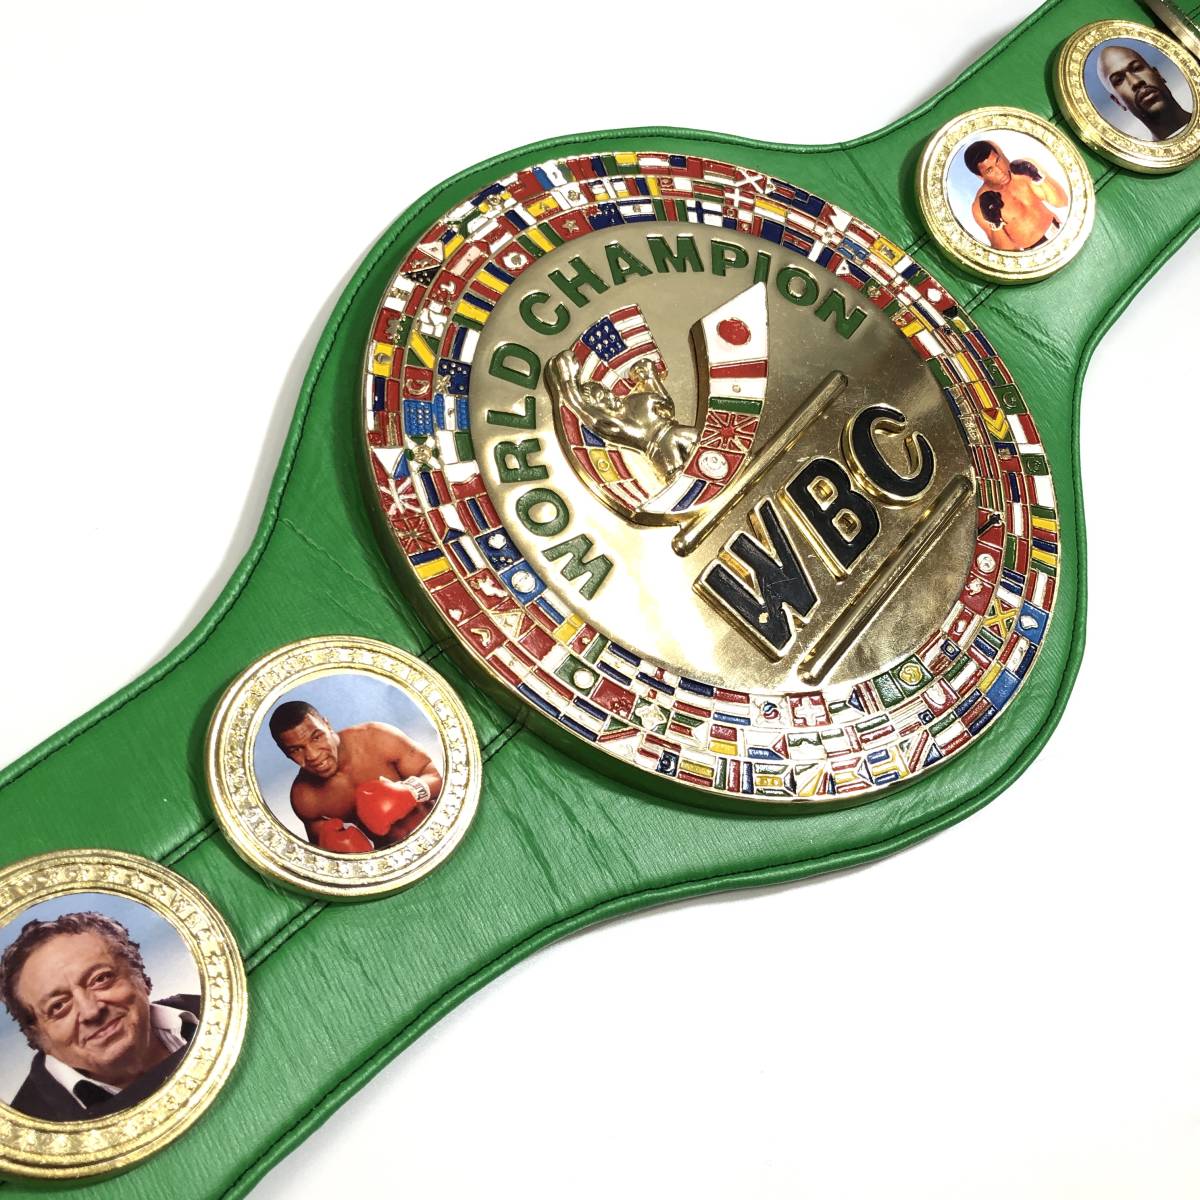 WBC ボクシング チャンピオンベルト レプリカ WORLD CHAMPION マイクタイソン 他 格闘技 菊RH